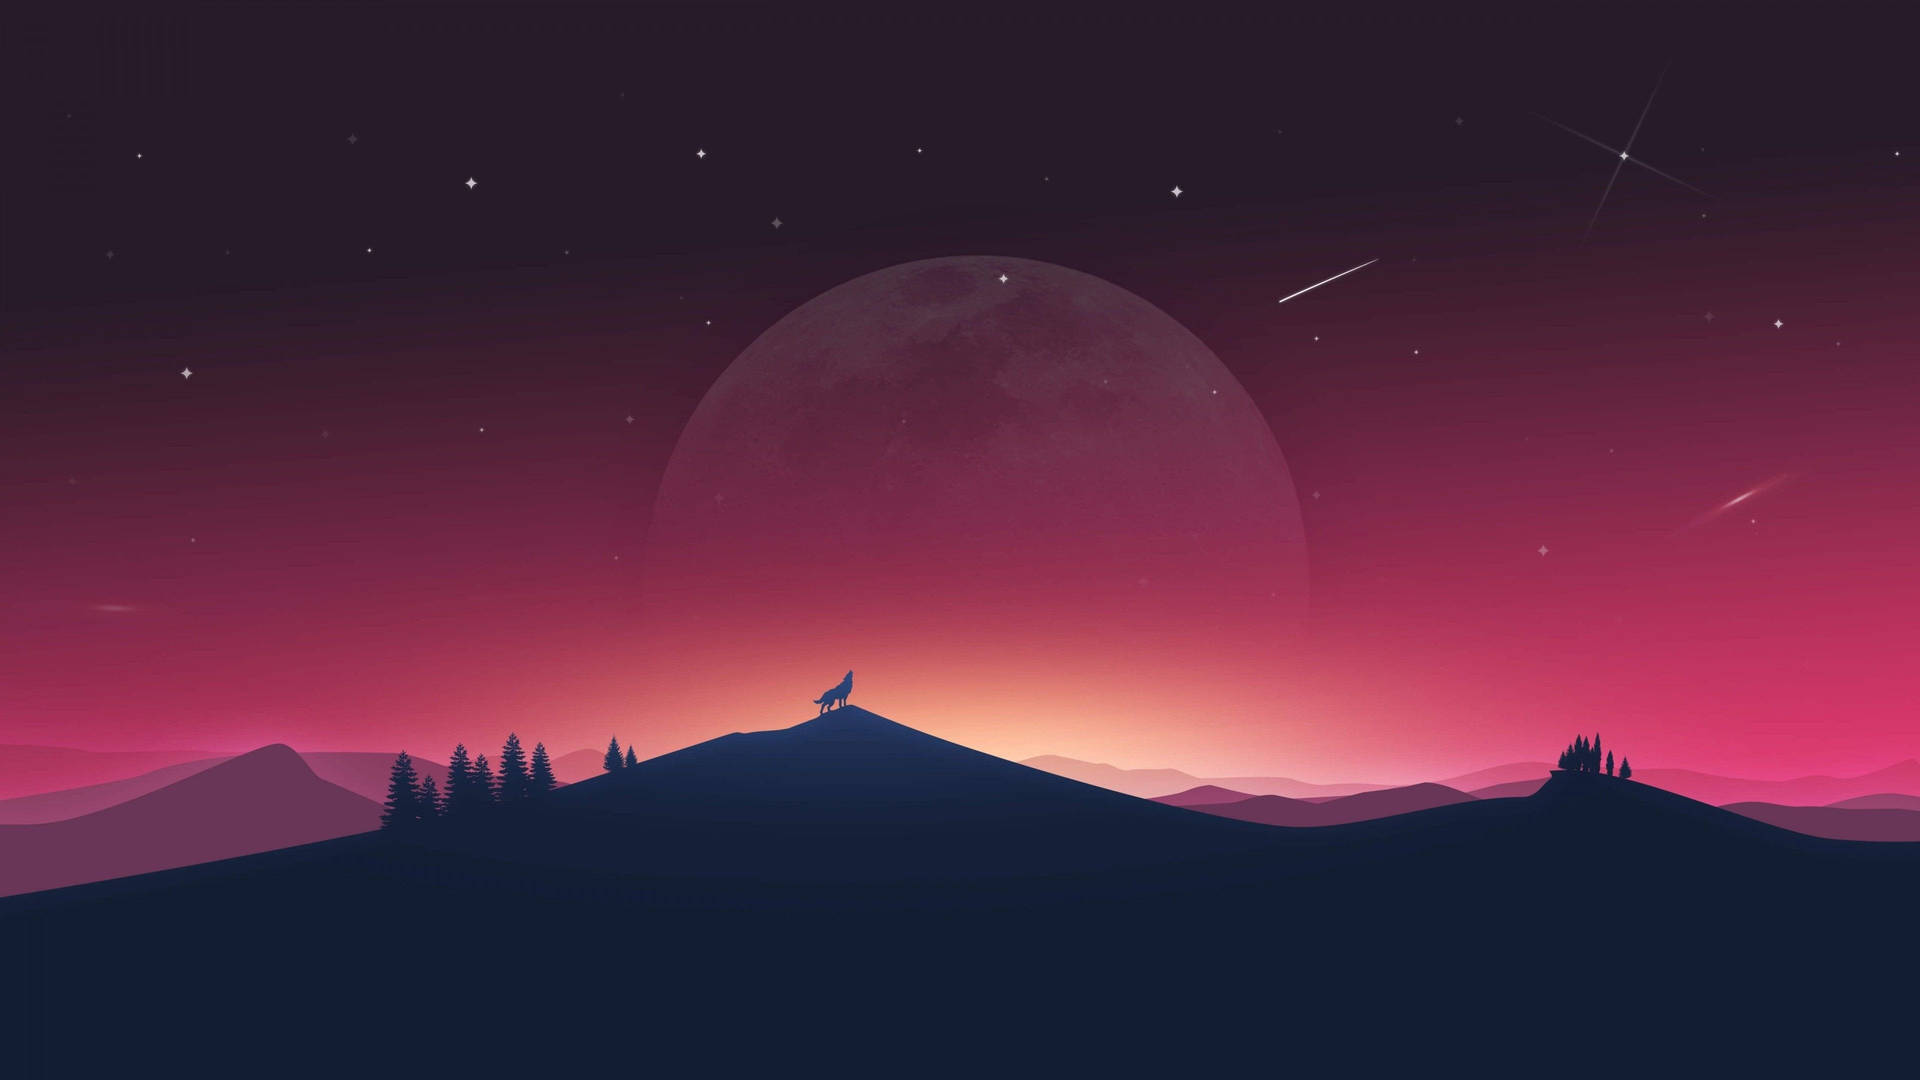 Moon In Desert Digital Art Background